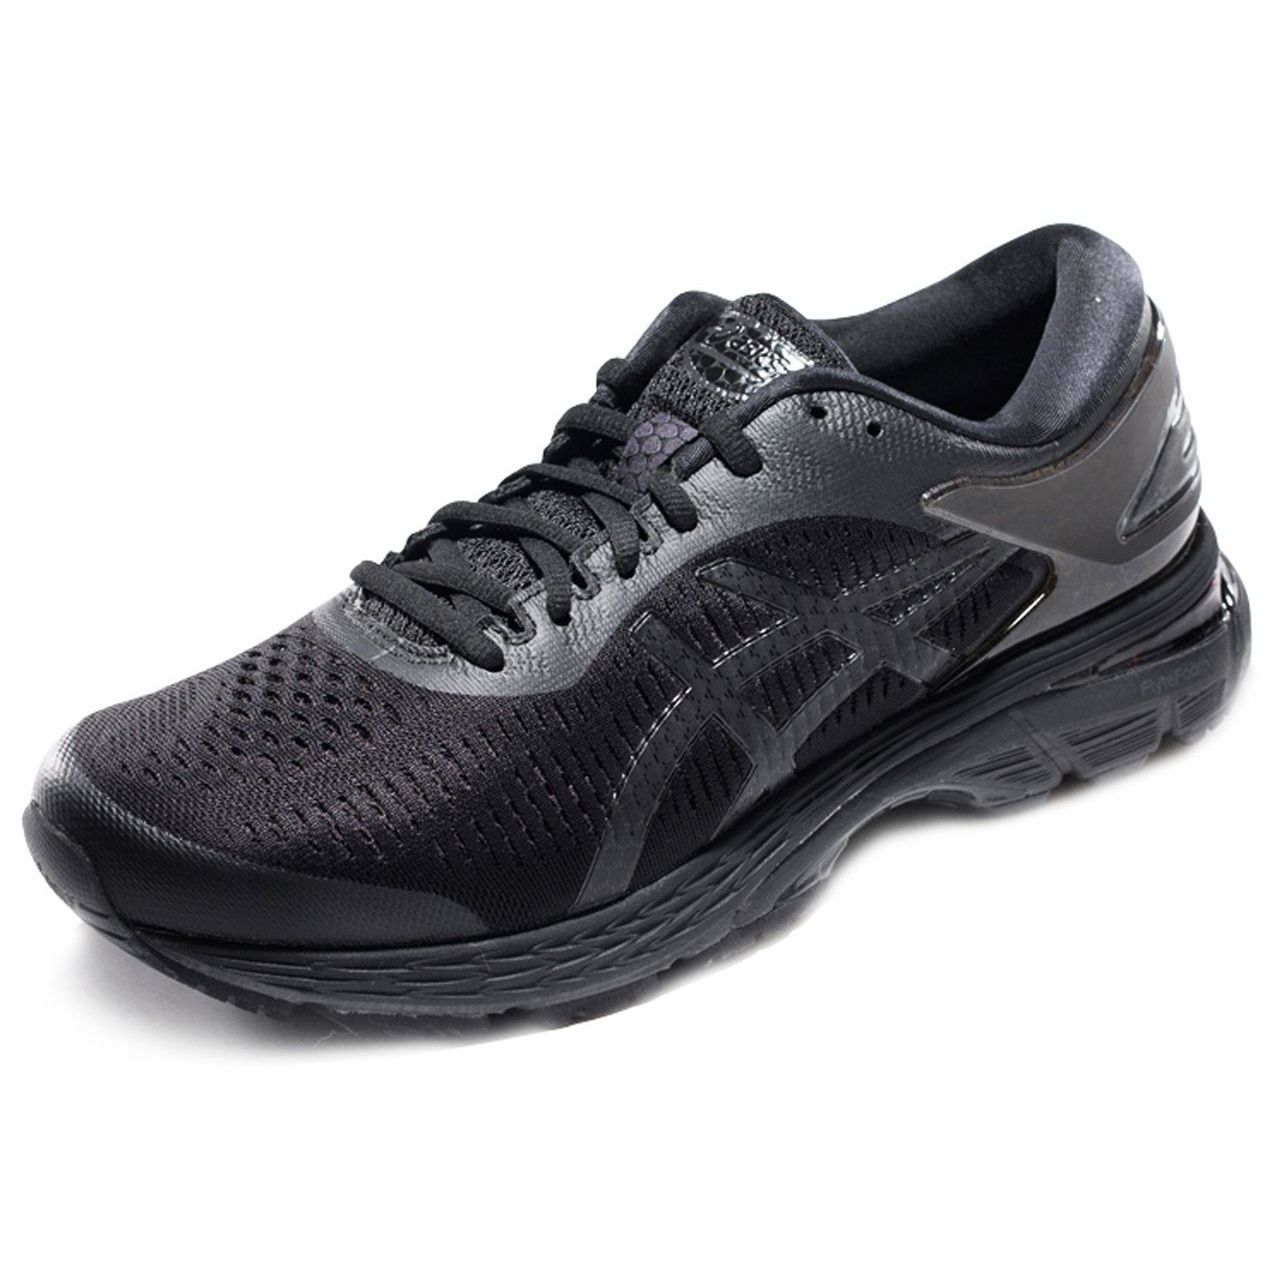  کفش مخصوص دویدن مردانه اسیکس مدلkayano کد T8756-09